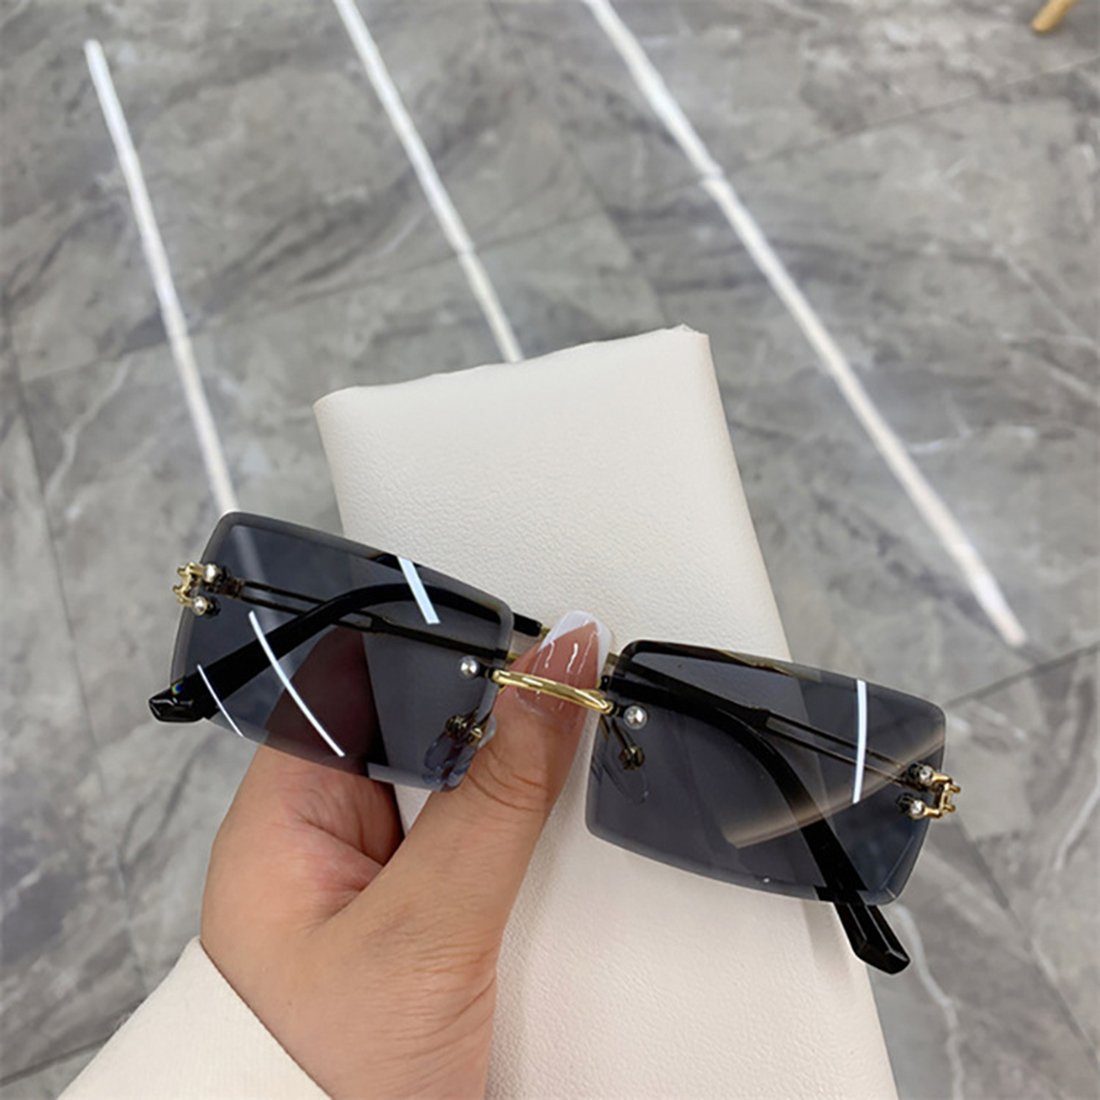 Haiaveng Sonnenbrille Durchsichtige grey für Randlose Damen Unisex Retro Sonnenbrille Ultra-Small Herren Linse Rechteckige Brille